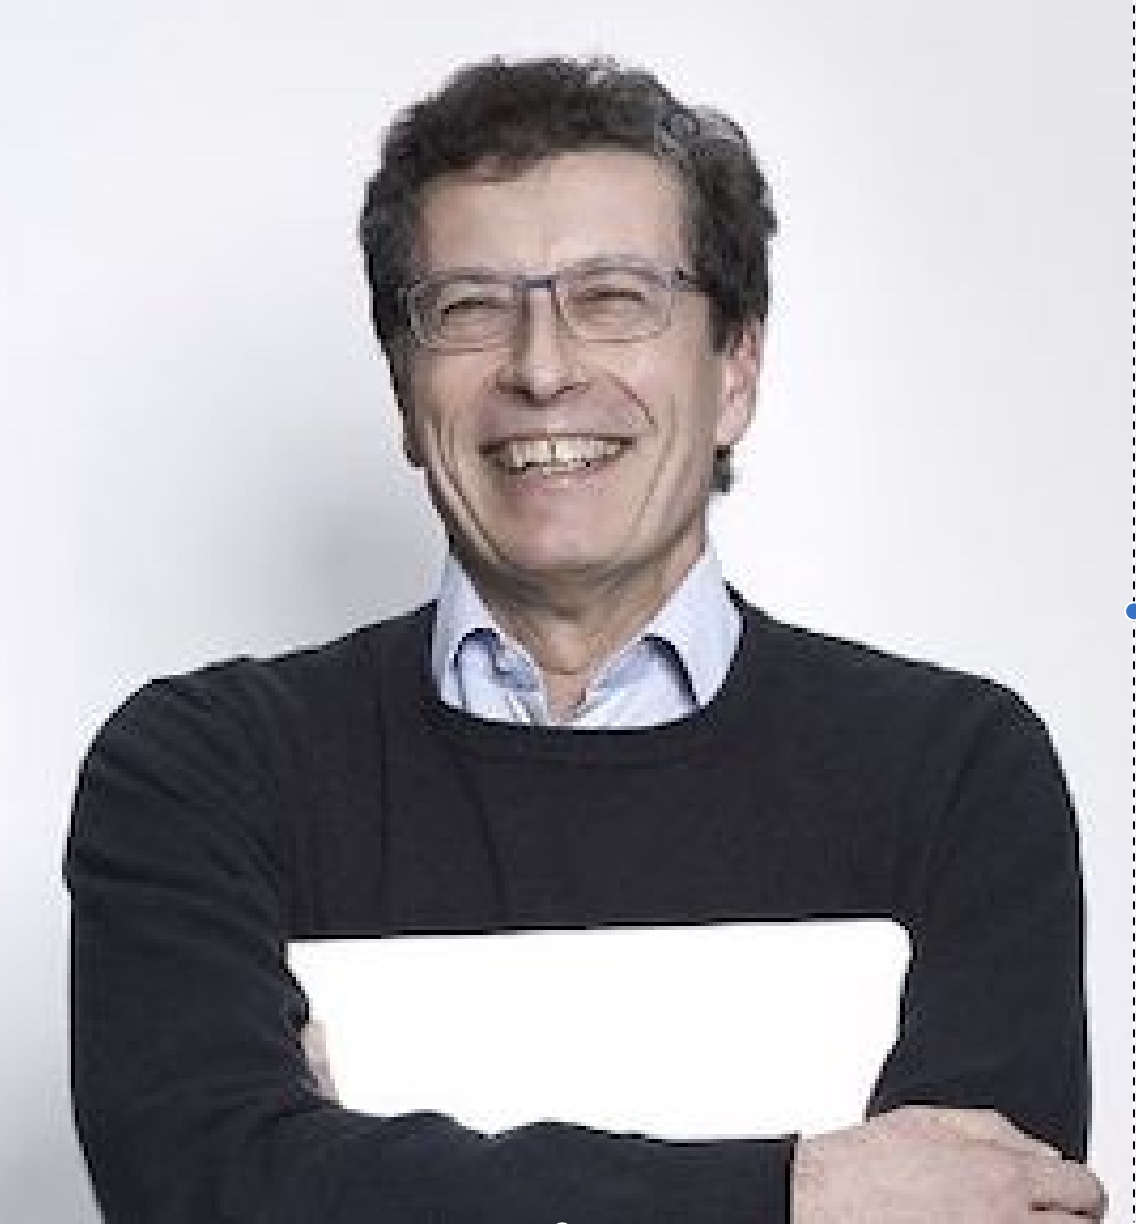 Marco Bianchi, PhD